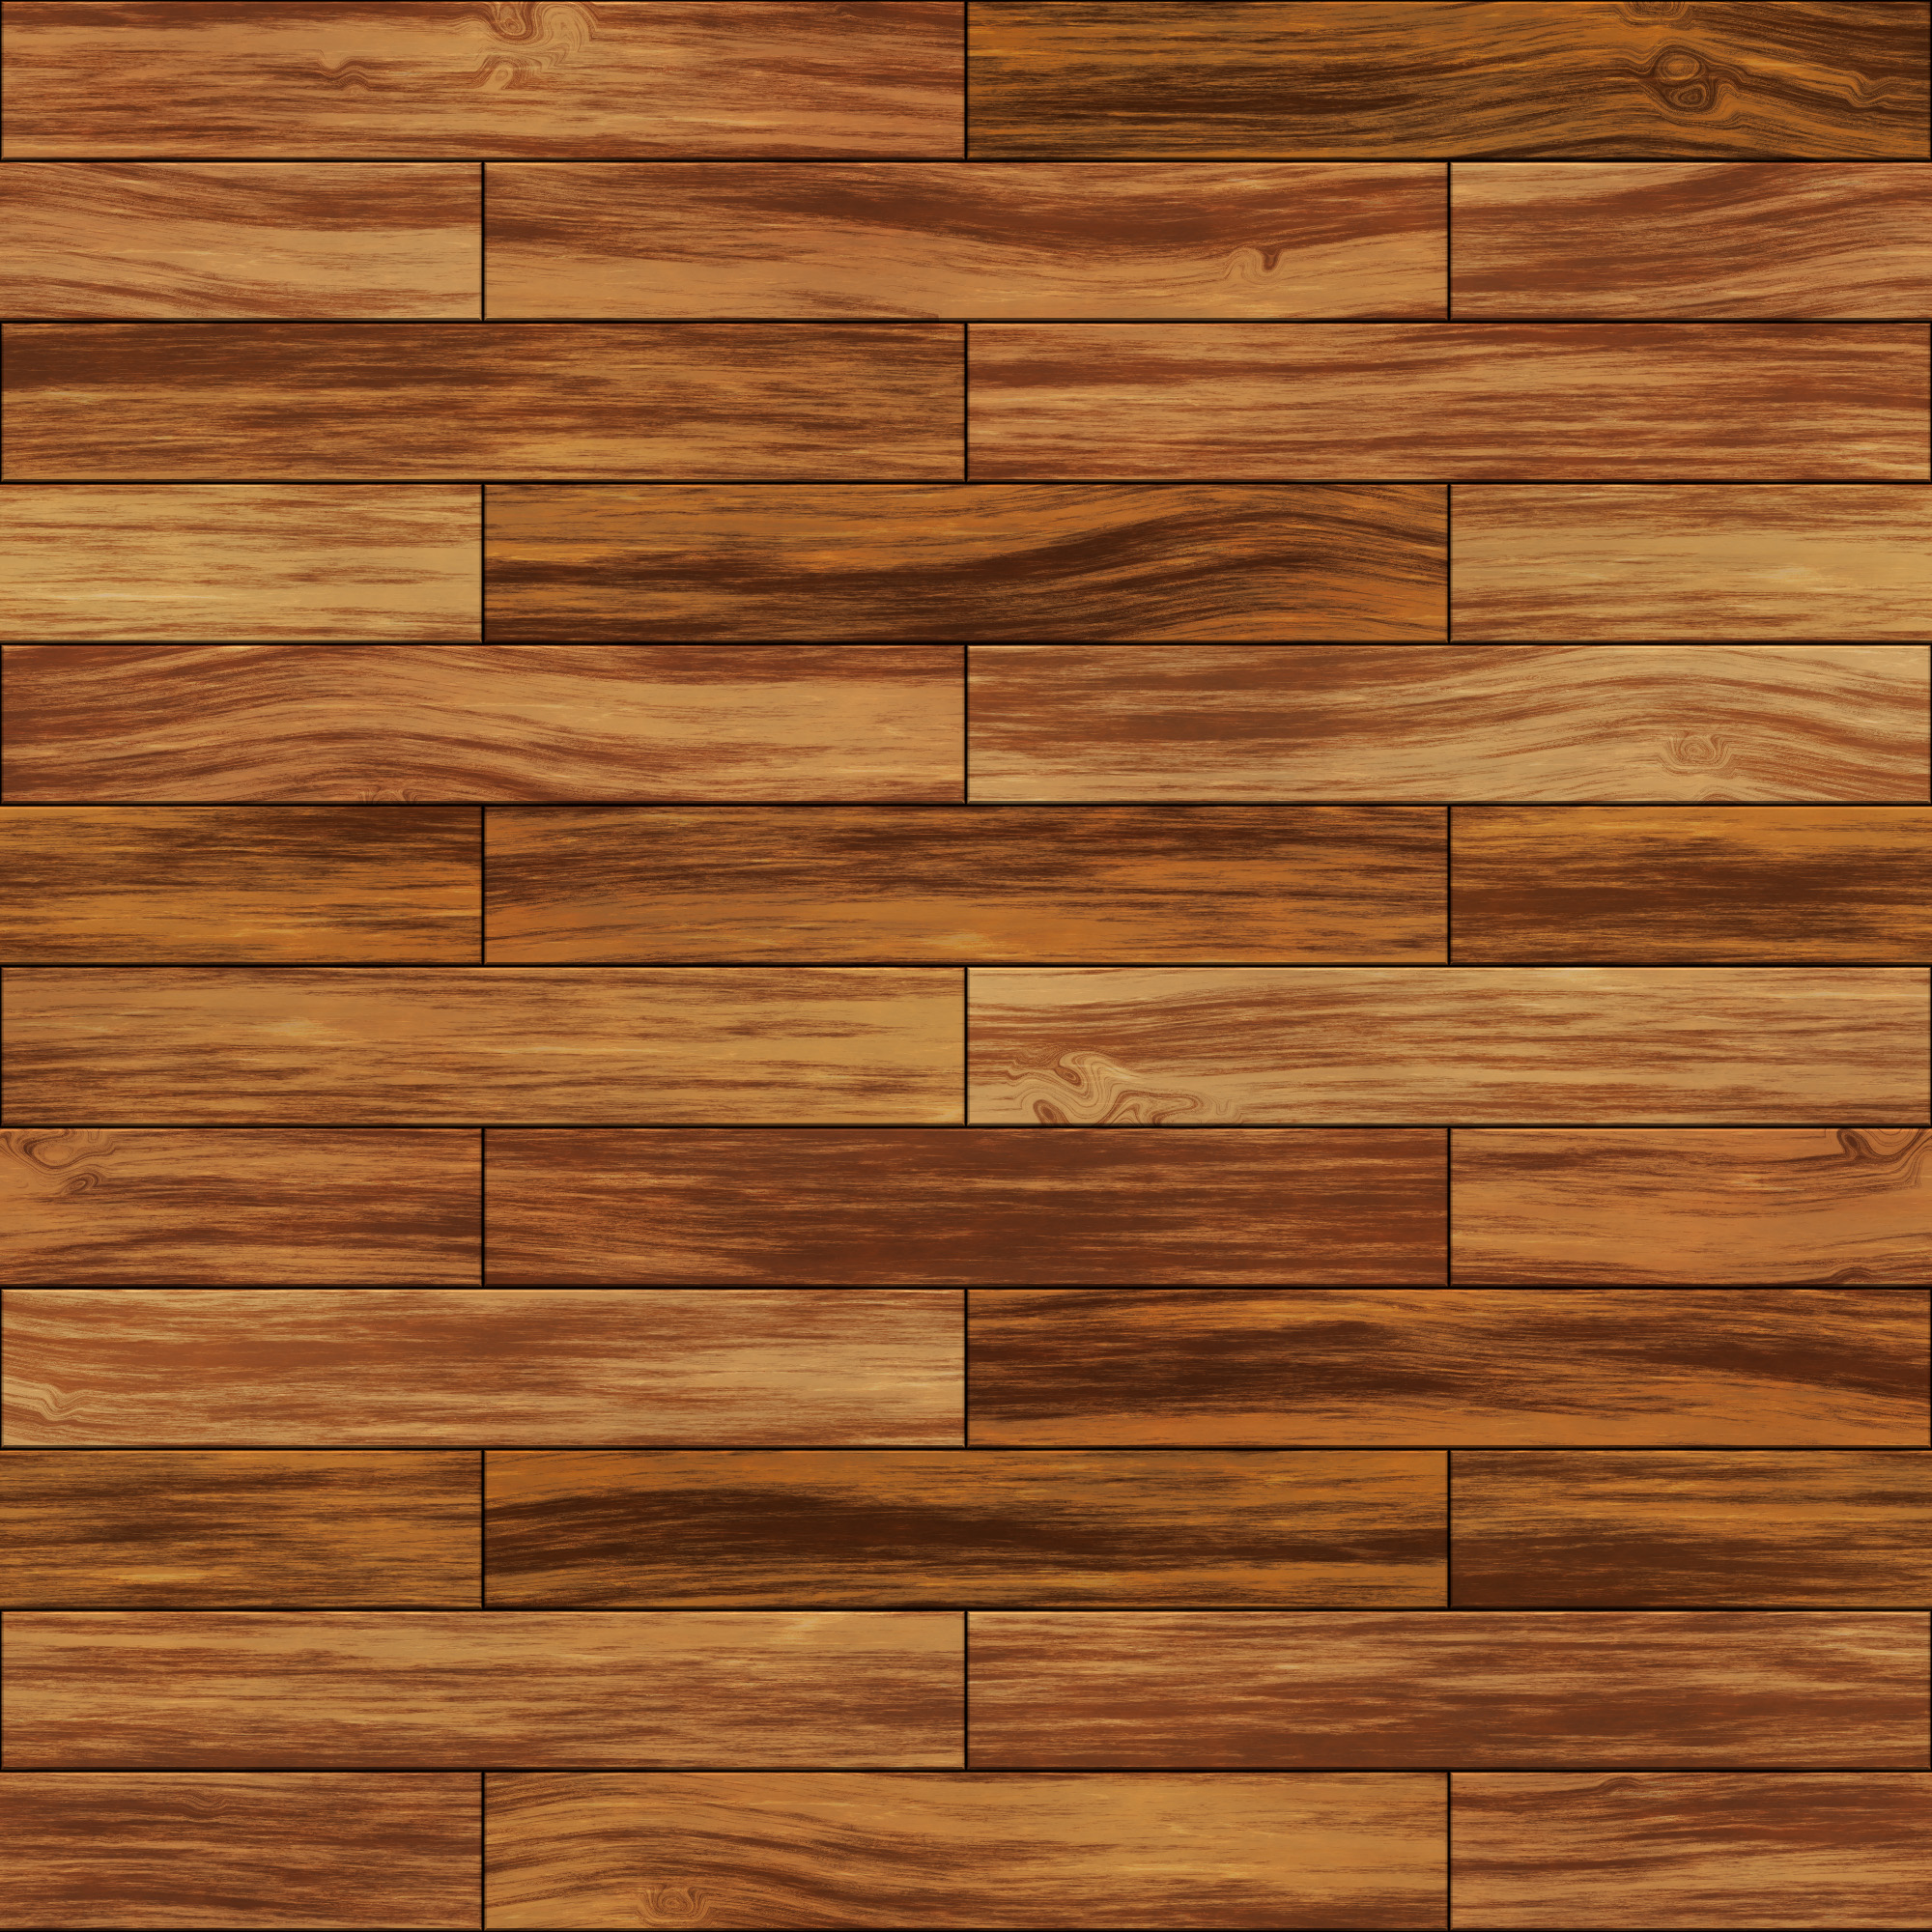 Bạn đang tìm nền gỗ sàn ván líp cao cấp để trang trí ngôi nhà của mình? Chúng tôi xin giới thiệu dòng sản phẩm nền gỗ sàn ván líp chất lượng nhất, sẵn sàng cung cấp cho bạn không gian sống lý tưởng, sang trọng và đẳng cấp hơn bao giờ hết. Hãy để hình ảnh của chúng tôi thổi bay mọi lo lắng và giúp bạn chọn lựa sản phẩm hoàn hảo nhất.